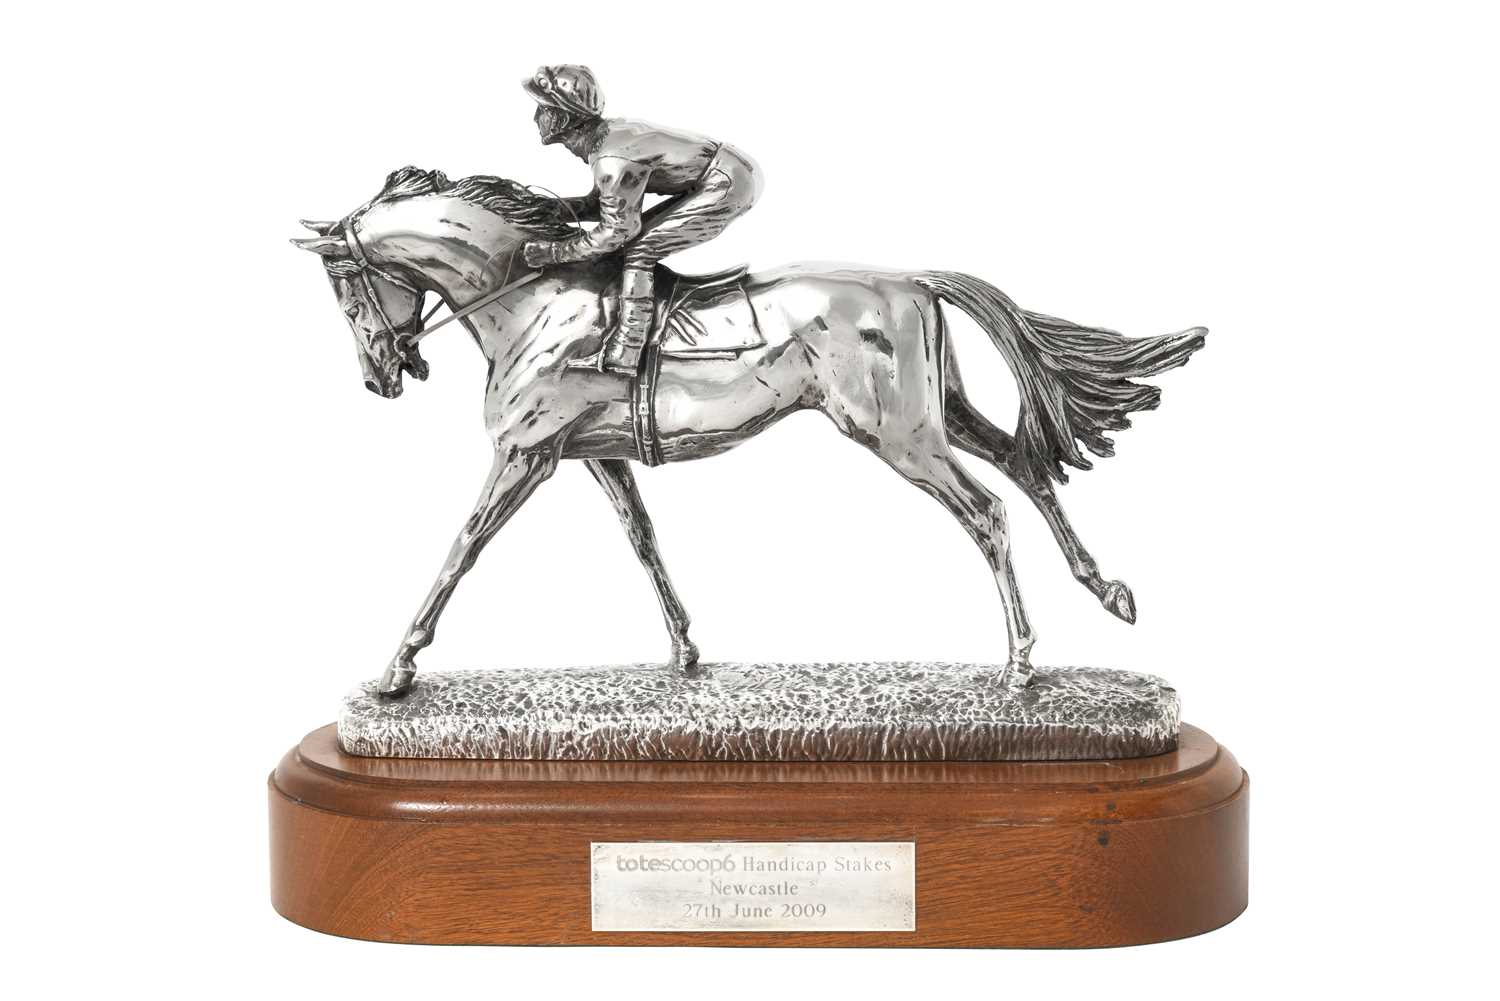 Lot 2310 - An Elizabeth II Silver Horse and Jockey Model